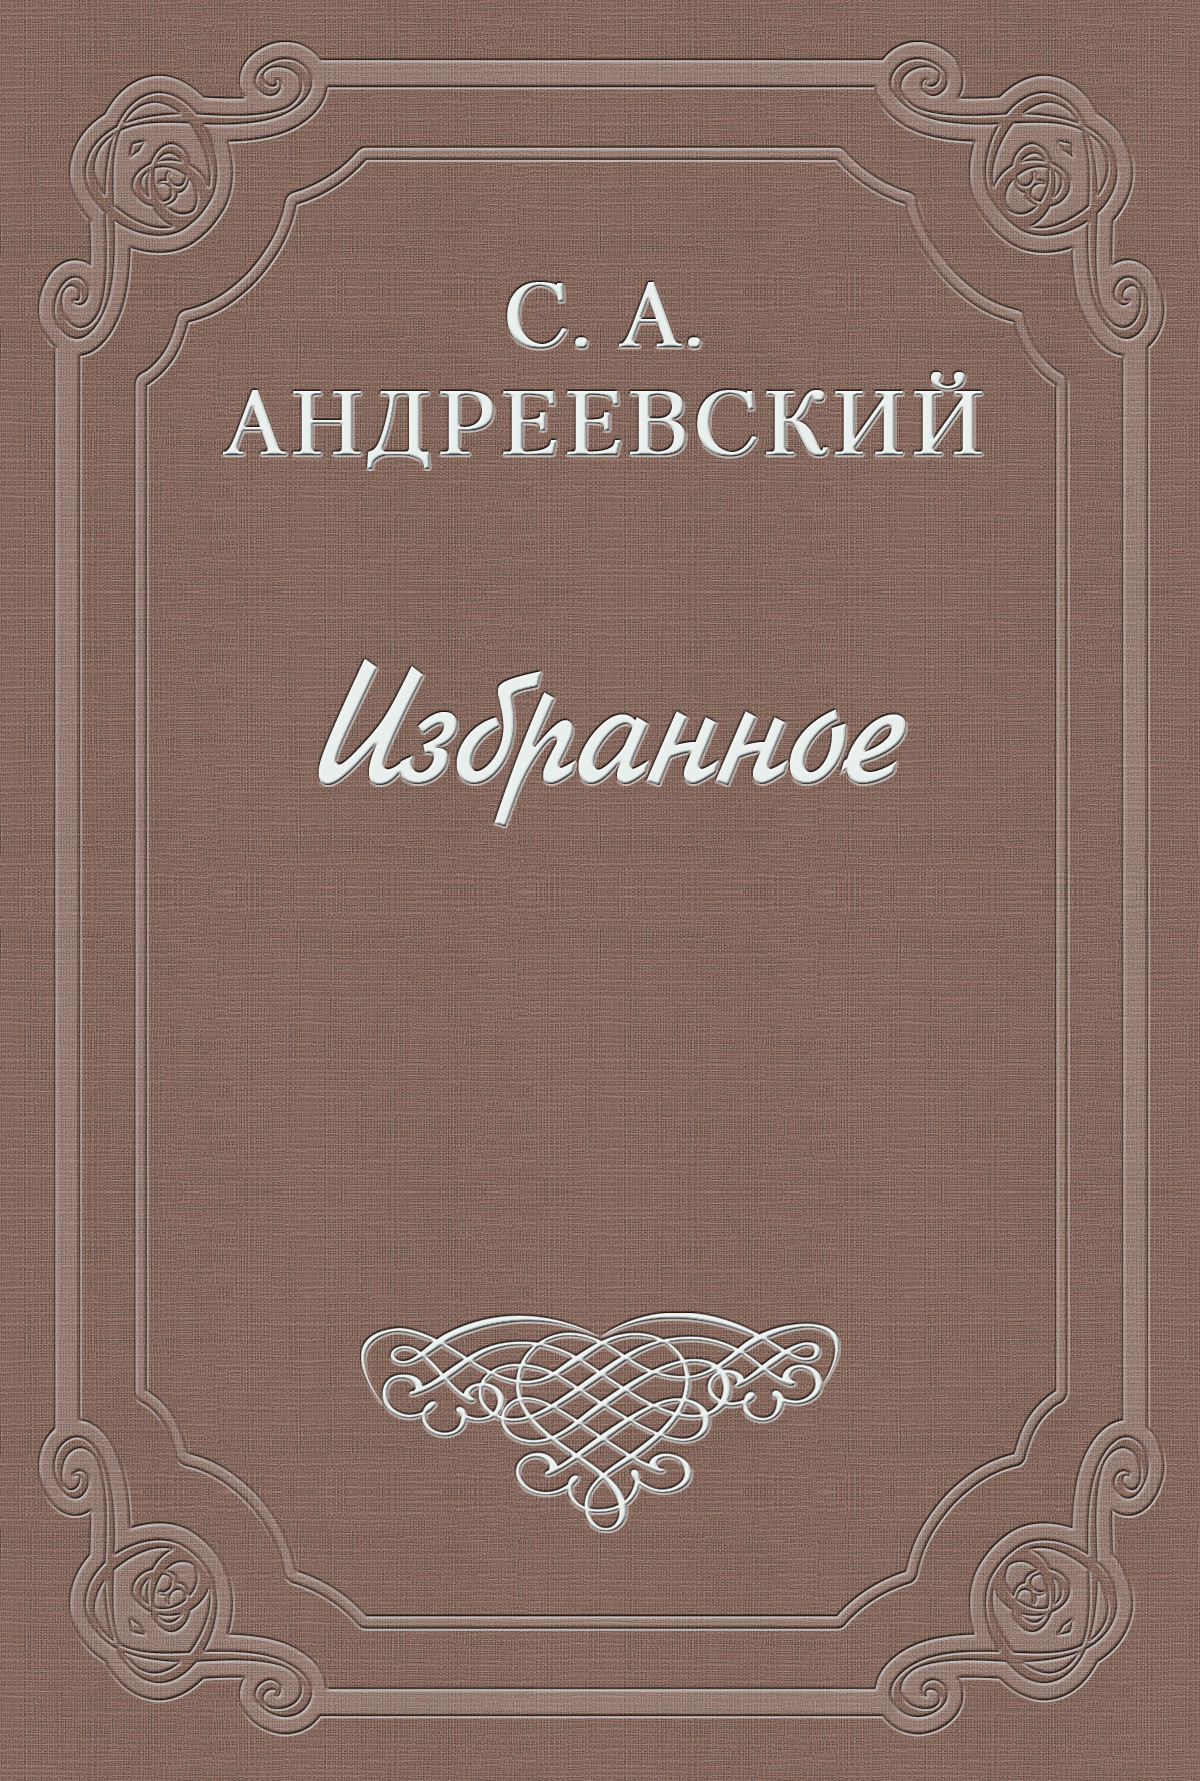 Книга Значение Чехова из серии , созданная Сергей Андреевский, может относится к жанру Критика. Стоимость книги Значение Чехова  с идентификатором 2810445 составляет 5.99 руб.